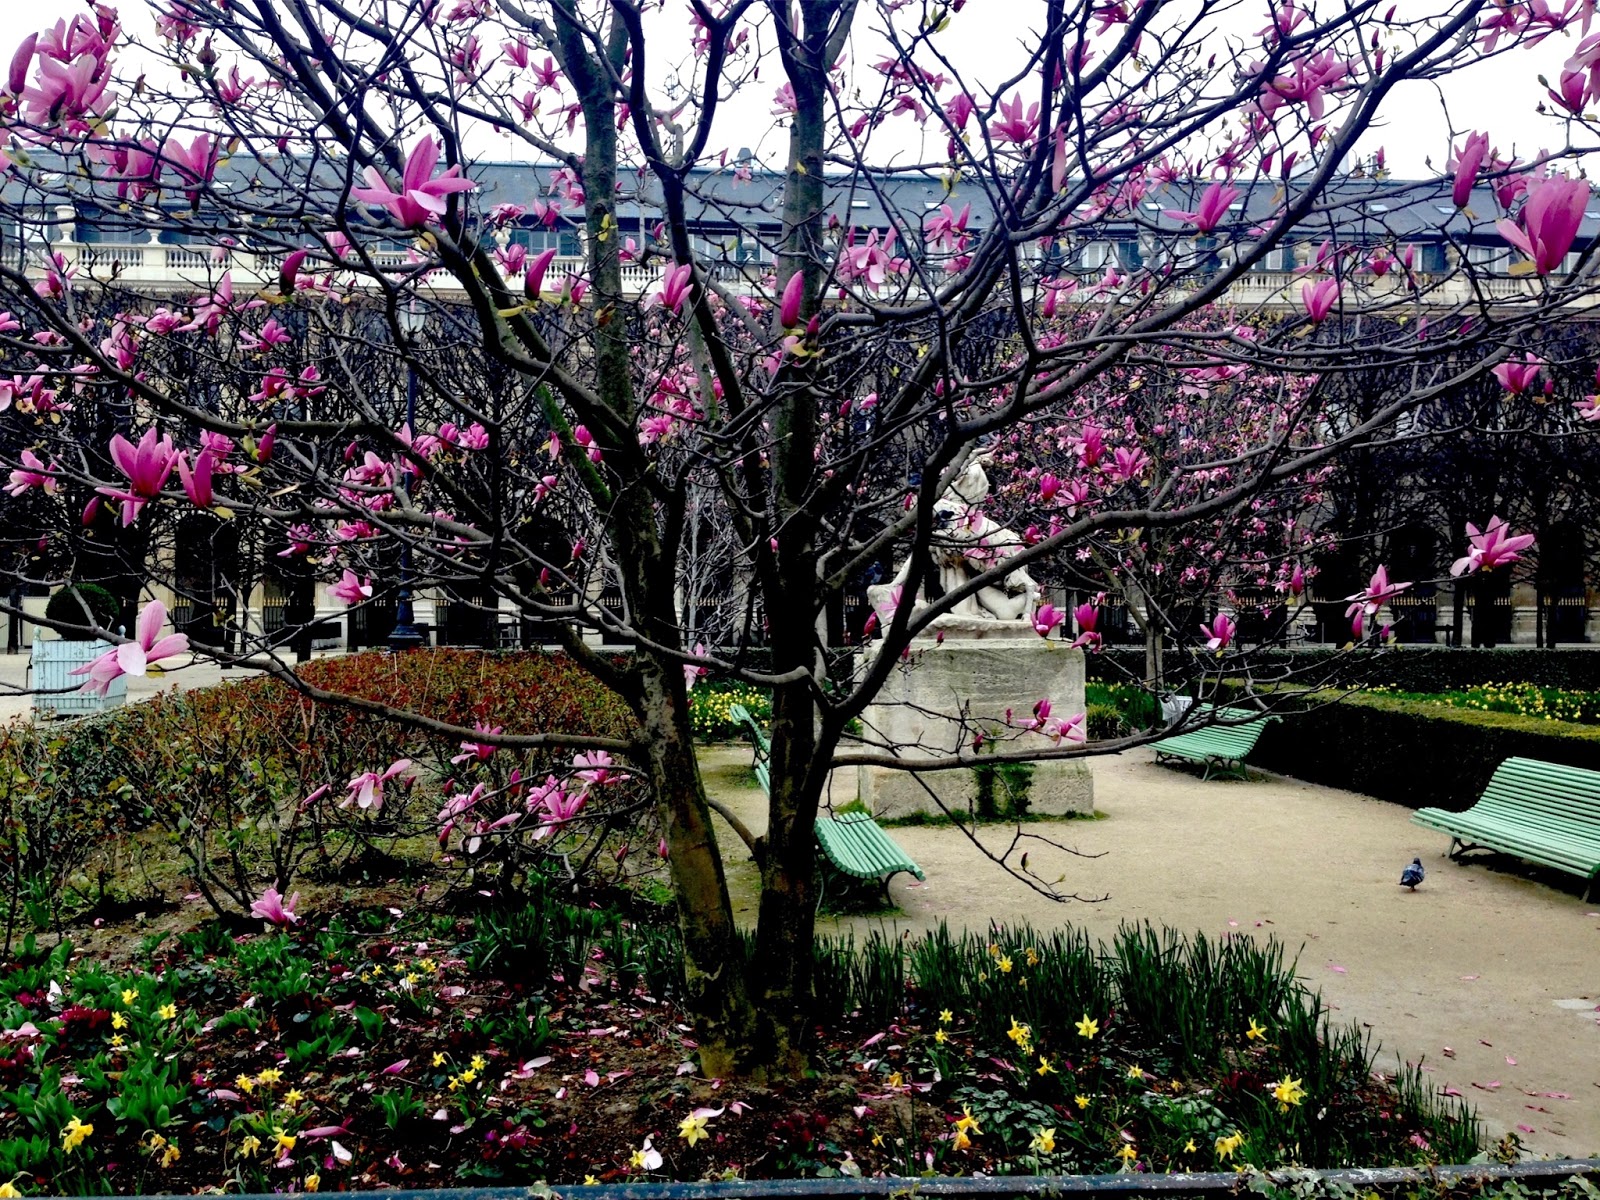 Focus On Paris: Fleurs de mai